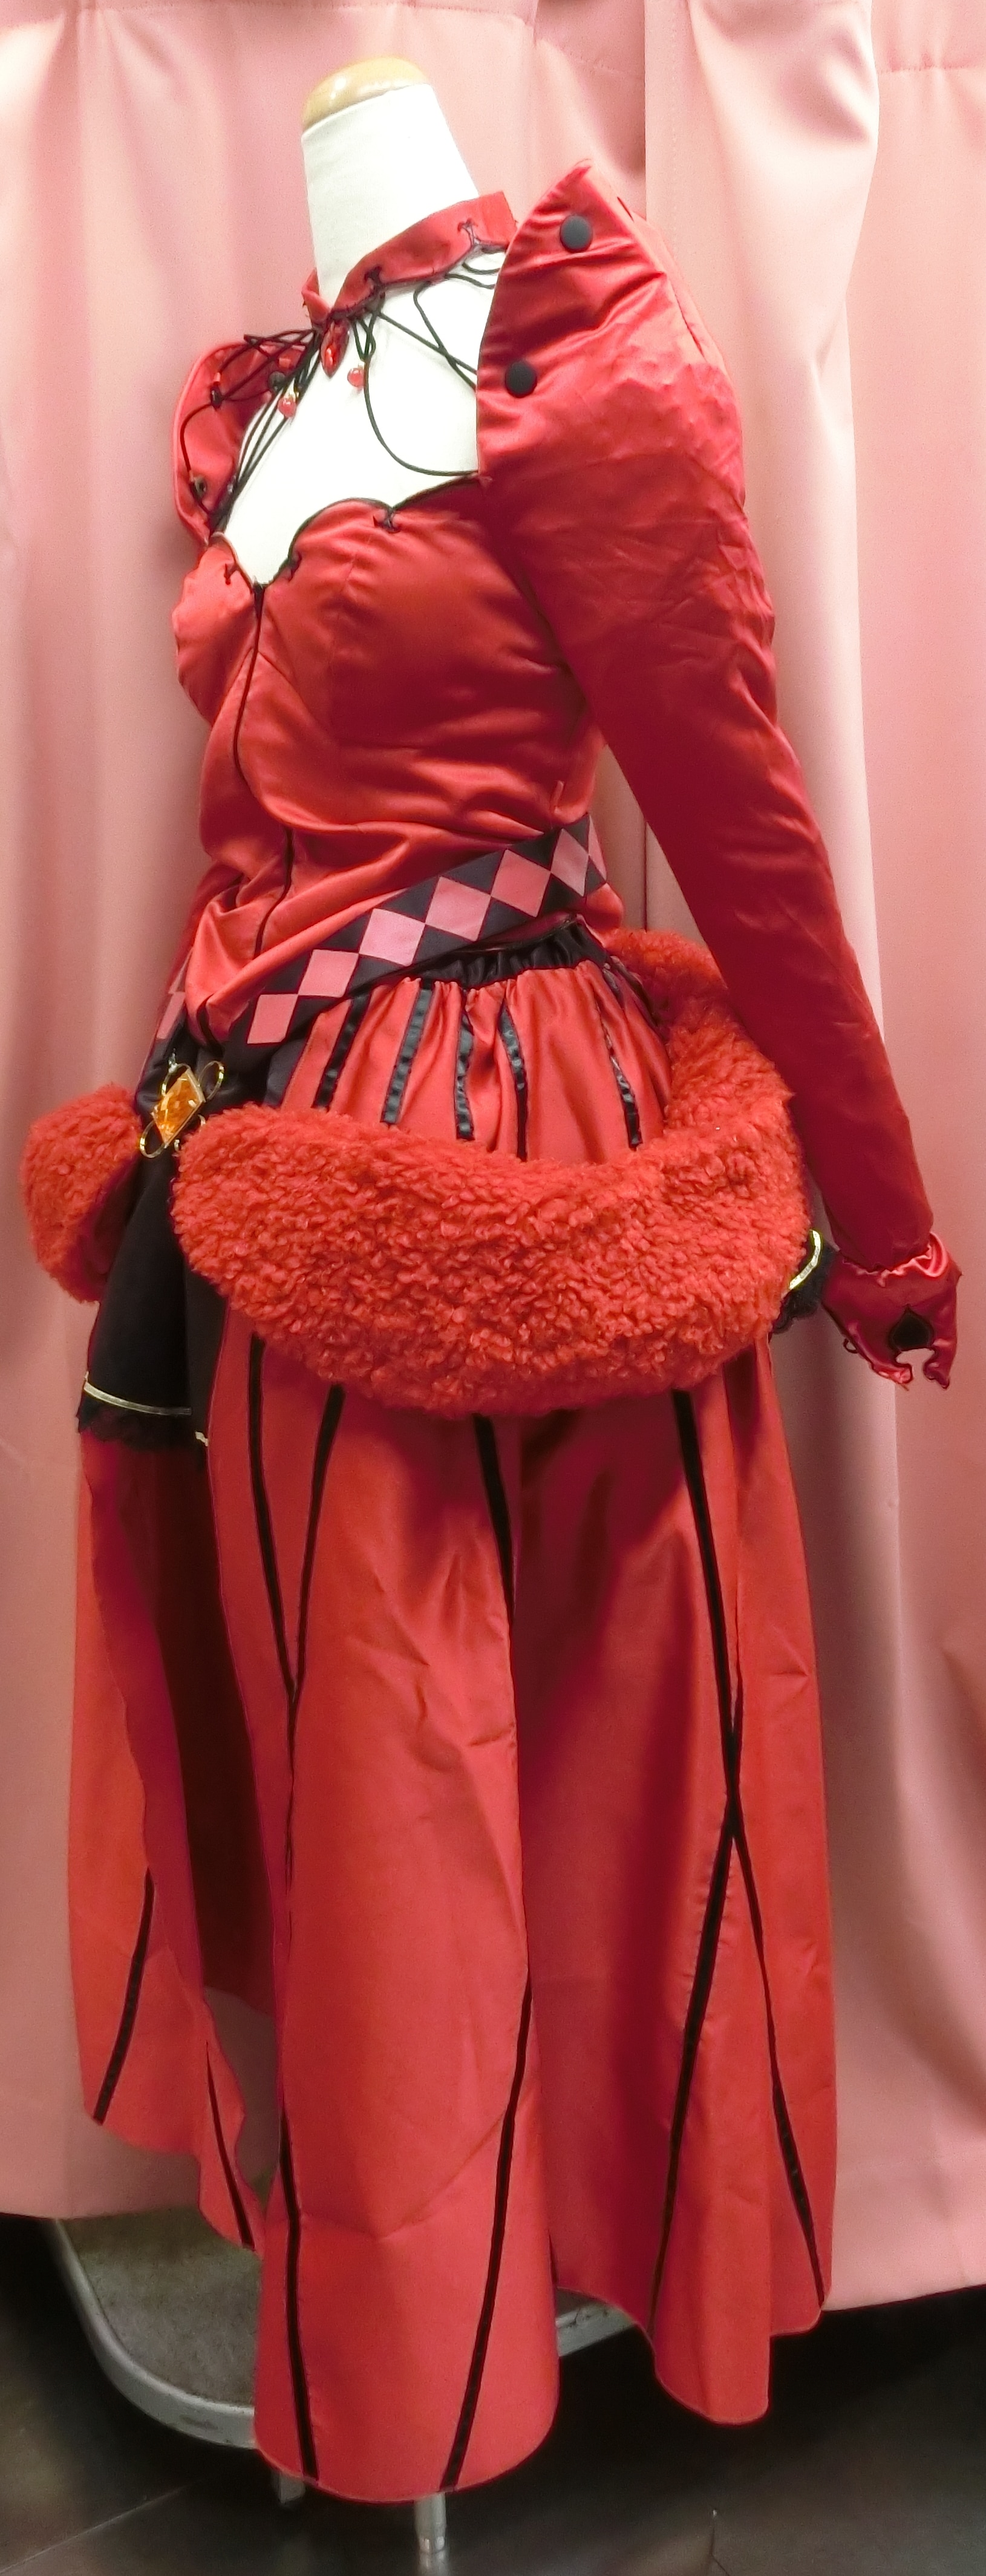 Fate Grand Order 遠坂凛 女性lサイズ 概念礼装 フォーマルクラフト サークル製 未着用品 コスプレ衣装 まんだらけ Mandarake